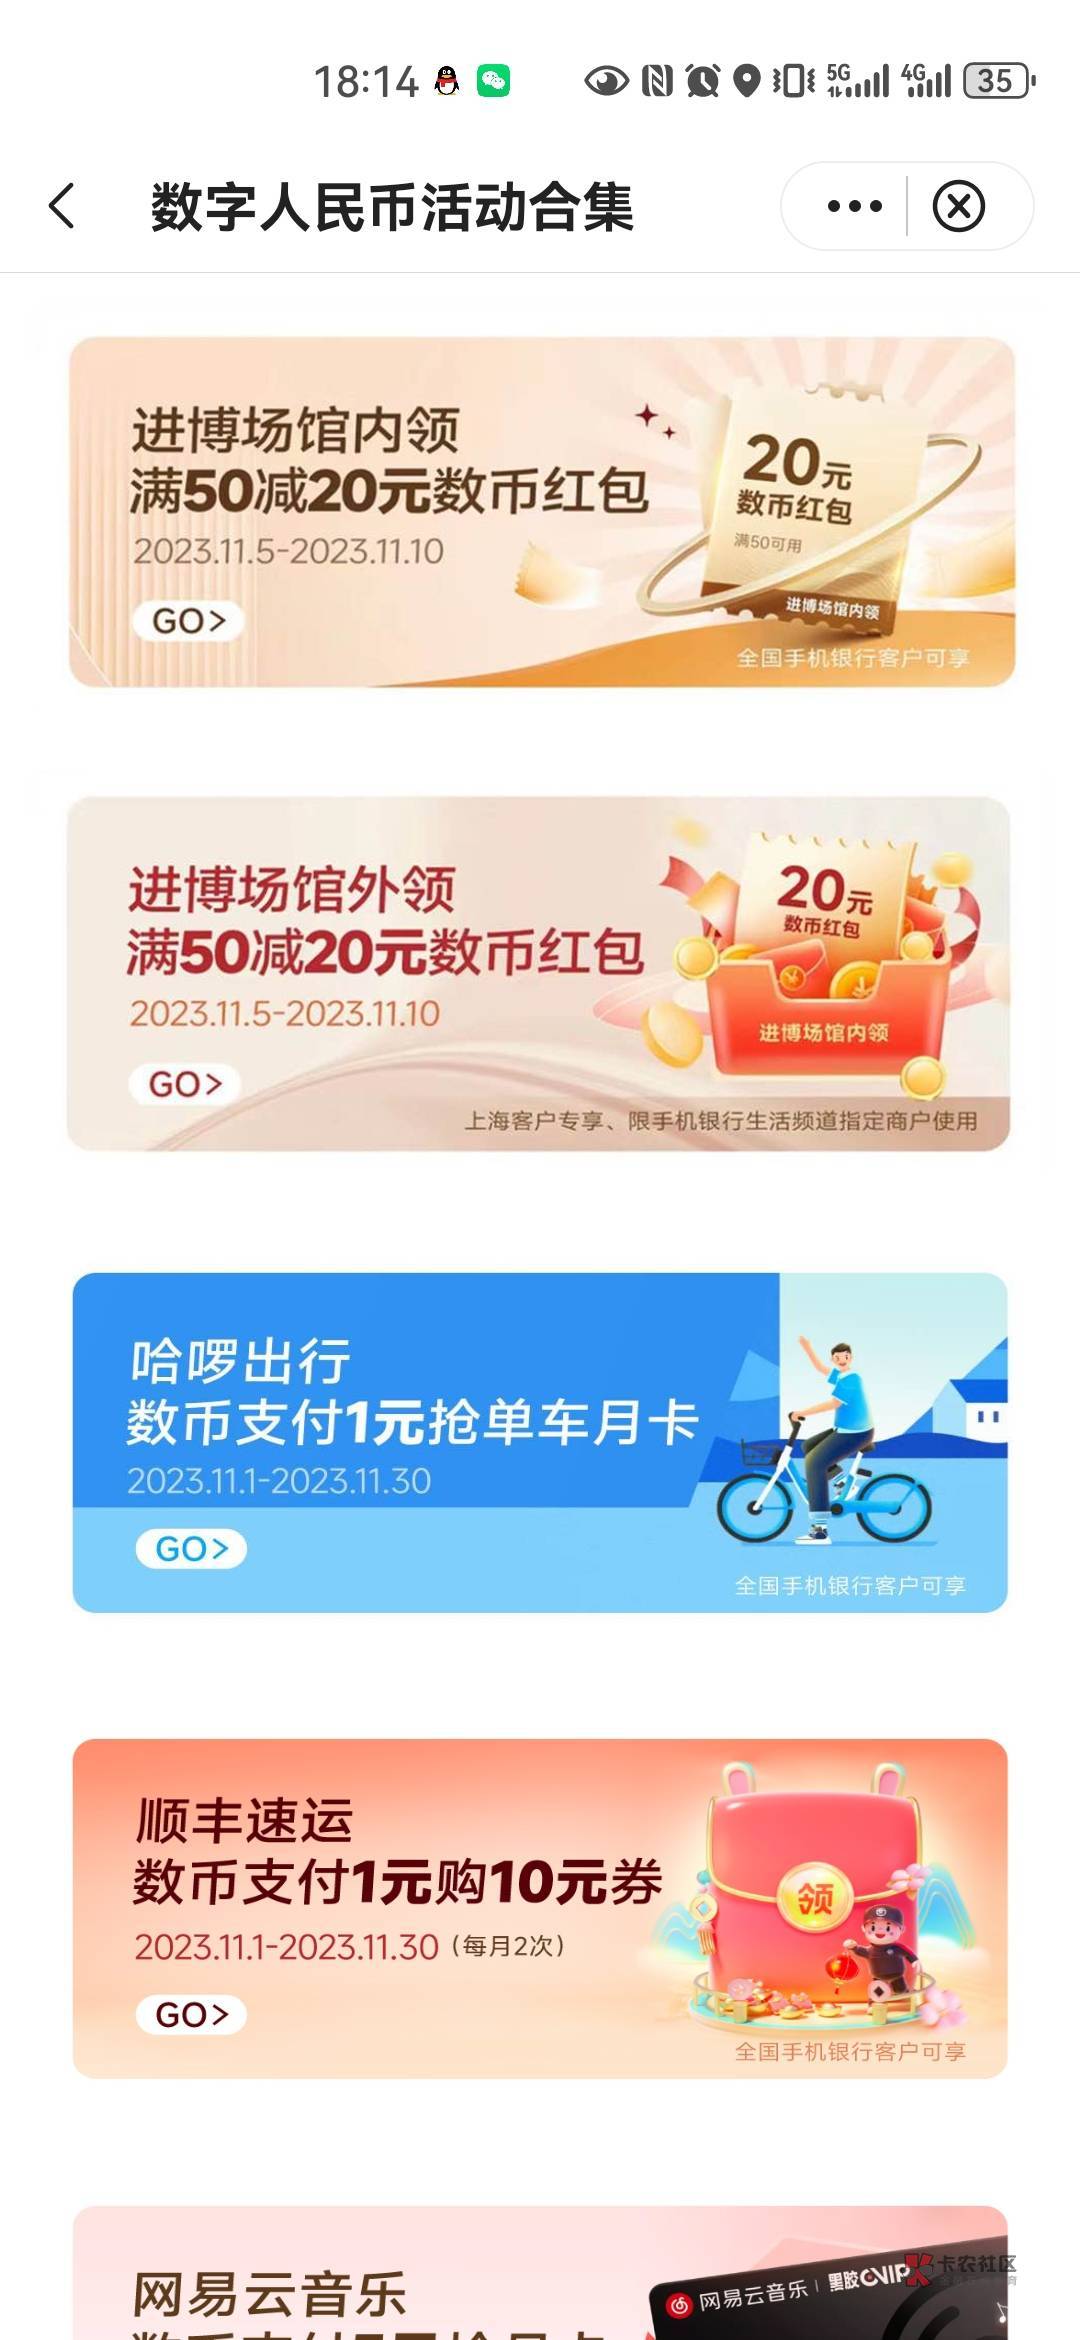 给老哥们整理一下中行上海的毛吧
1:上海新客每个月领10，连续三个月   30
2:上海周三44 / 作者:嬴胡亥 / 